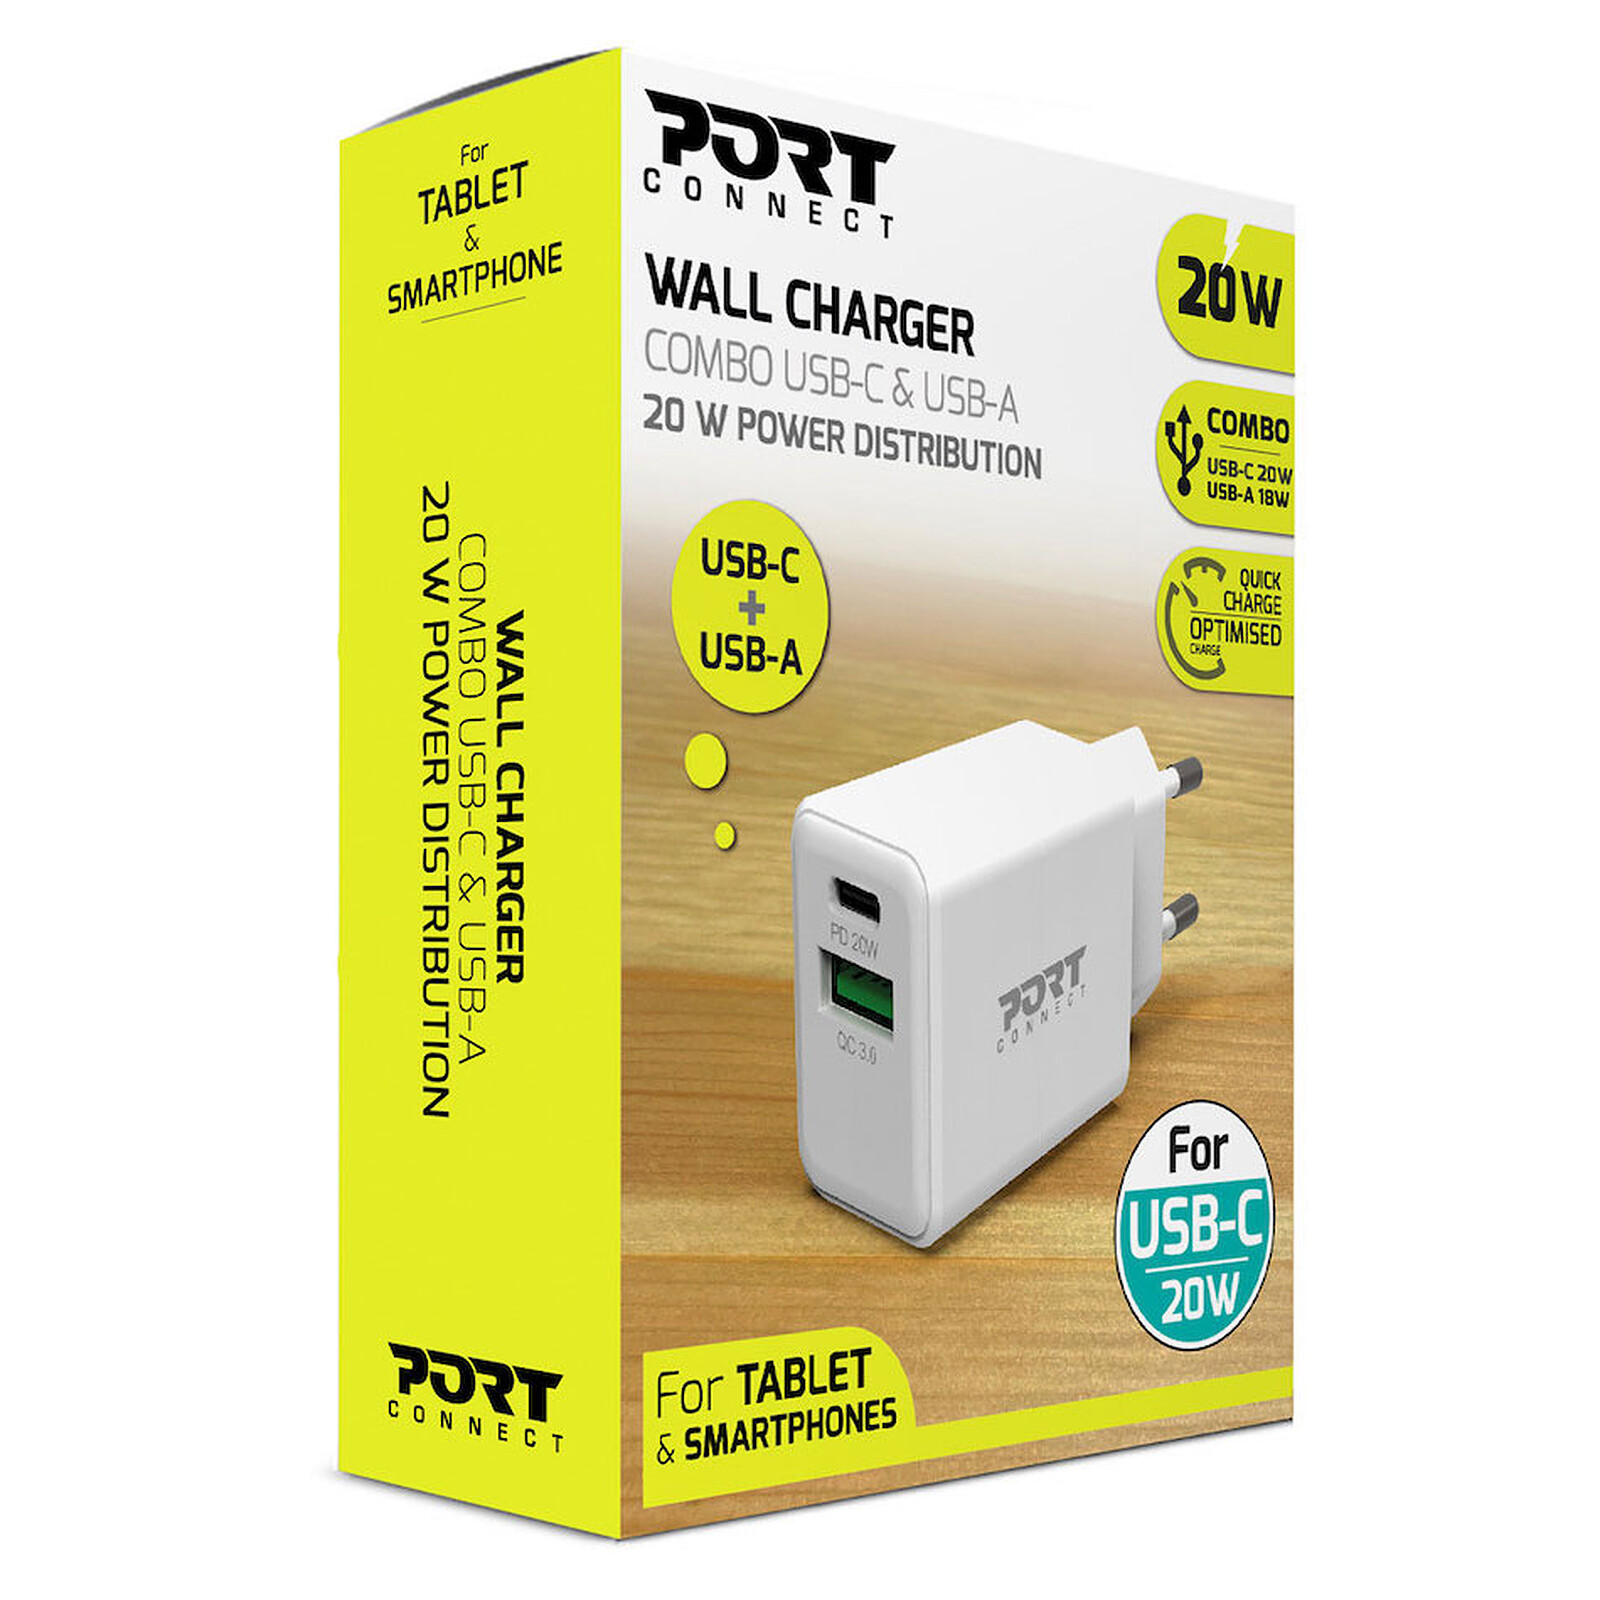 PORT Connect Chargeur Secteur Combo 45W USB-C Power Delivery / USB-A - USB  - Garantie 3 ans LDLC